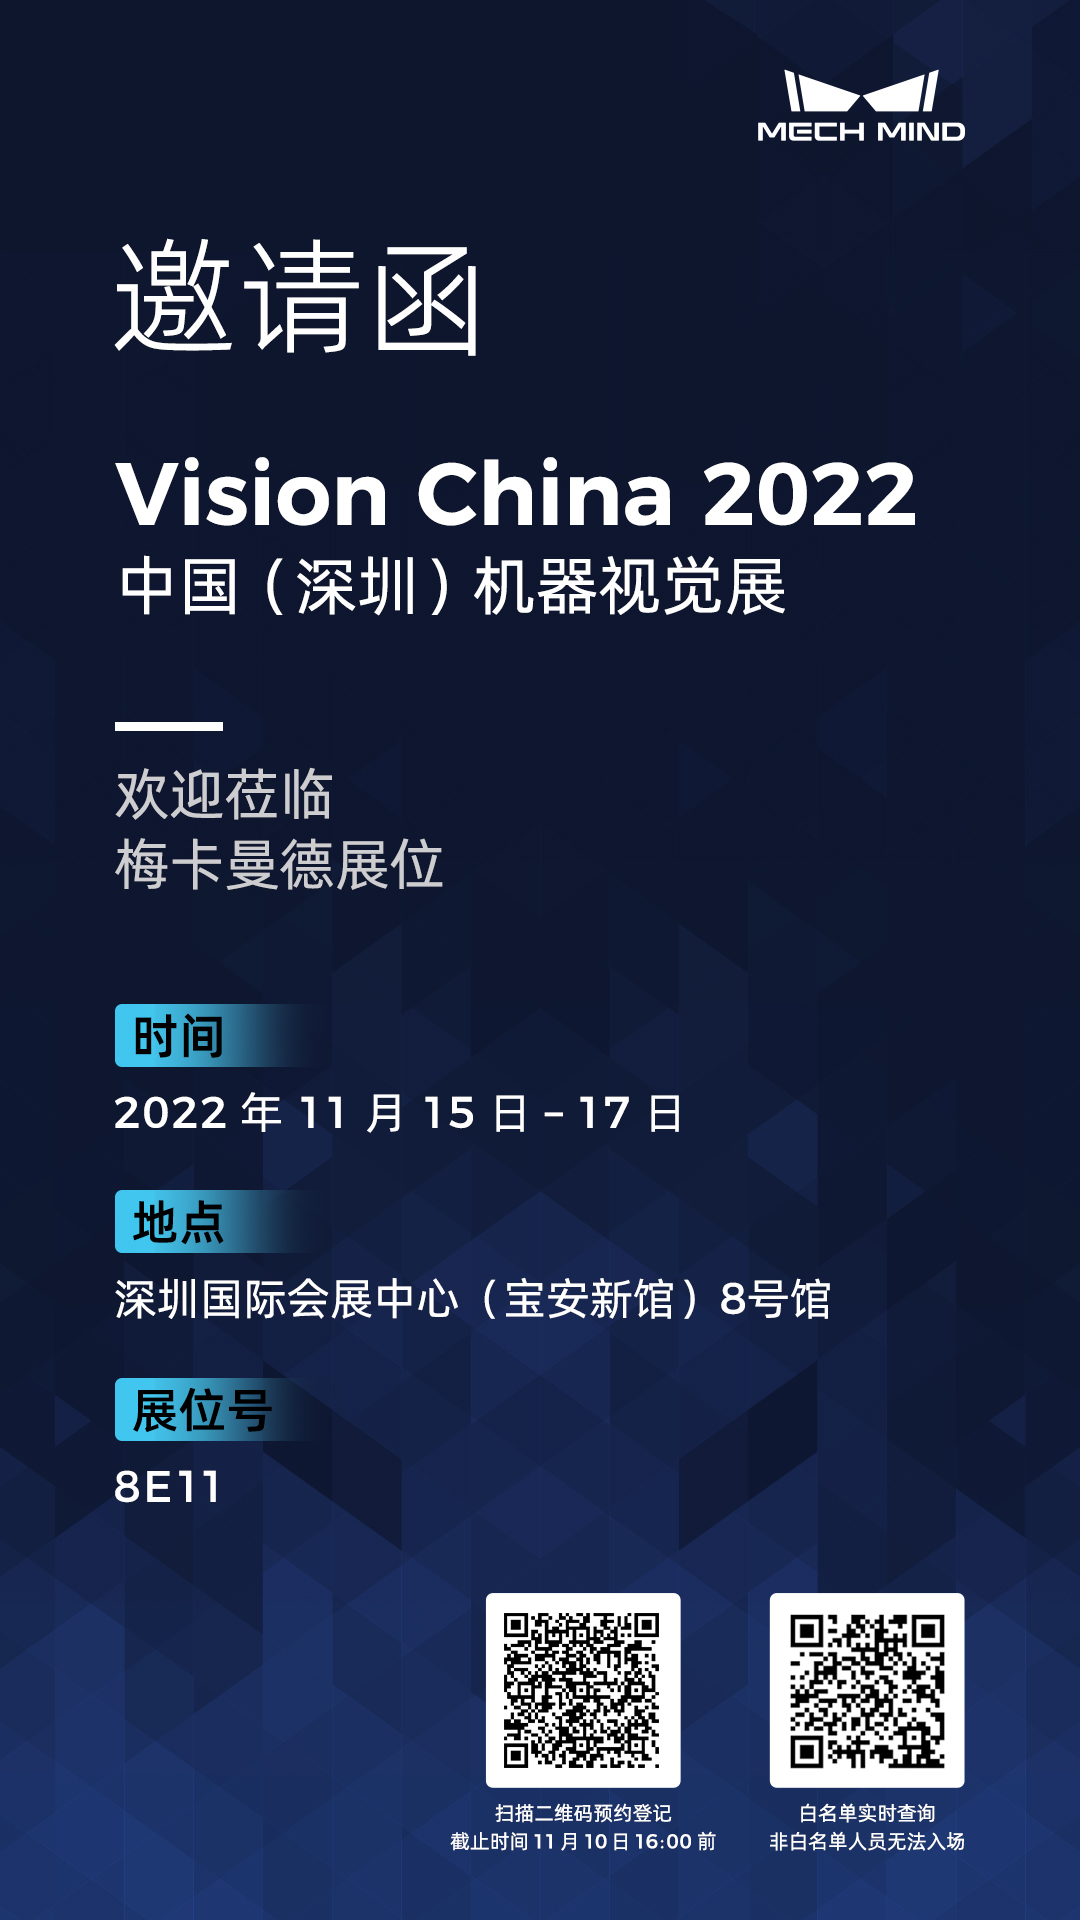 展会预告 | 梅卡曼德全线工业质检方案首次公开亮相，邀您莅临15-17日深圳Vision China